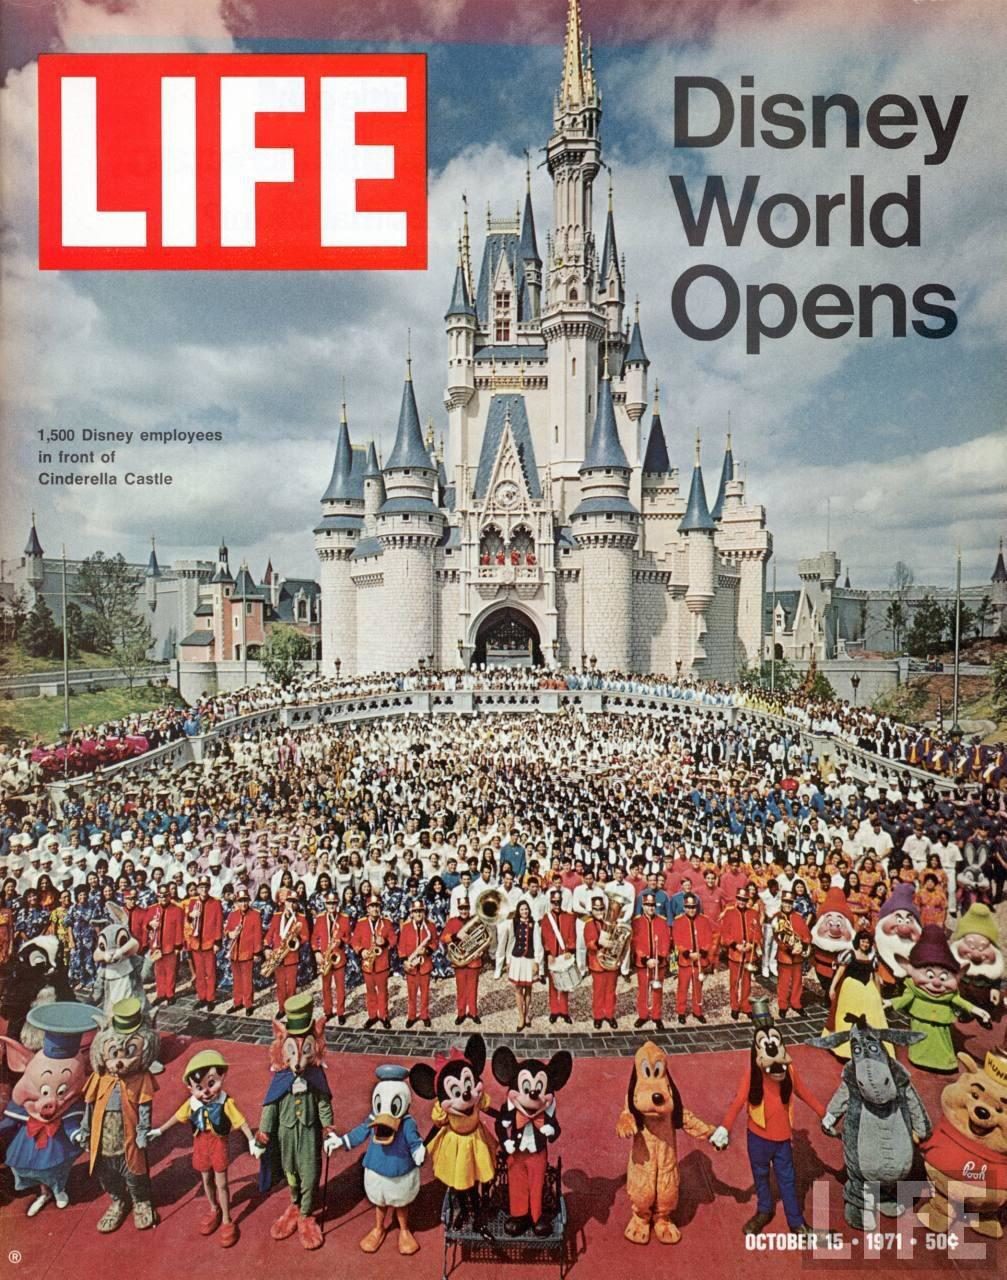 Couverture du magazine LIFE en 1971, à la création du parc Disney World  ©Reddit